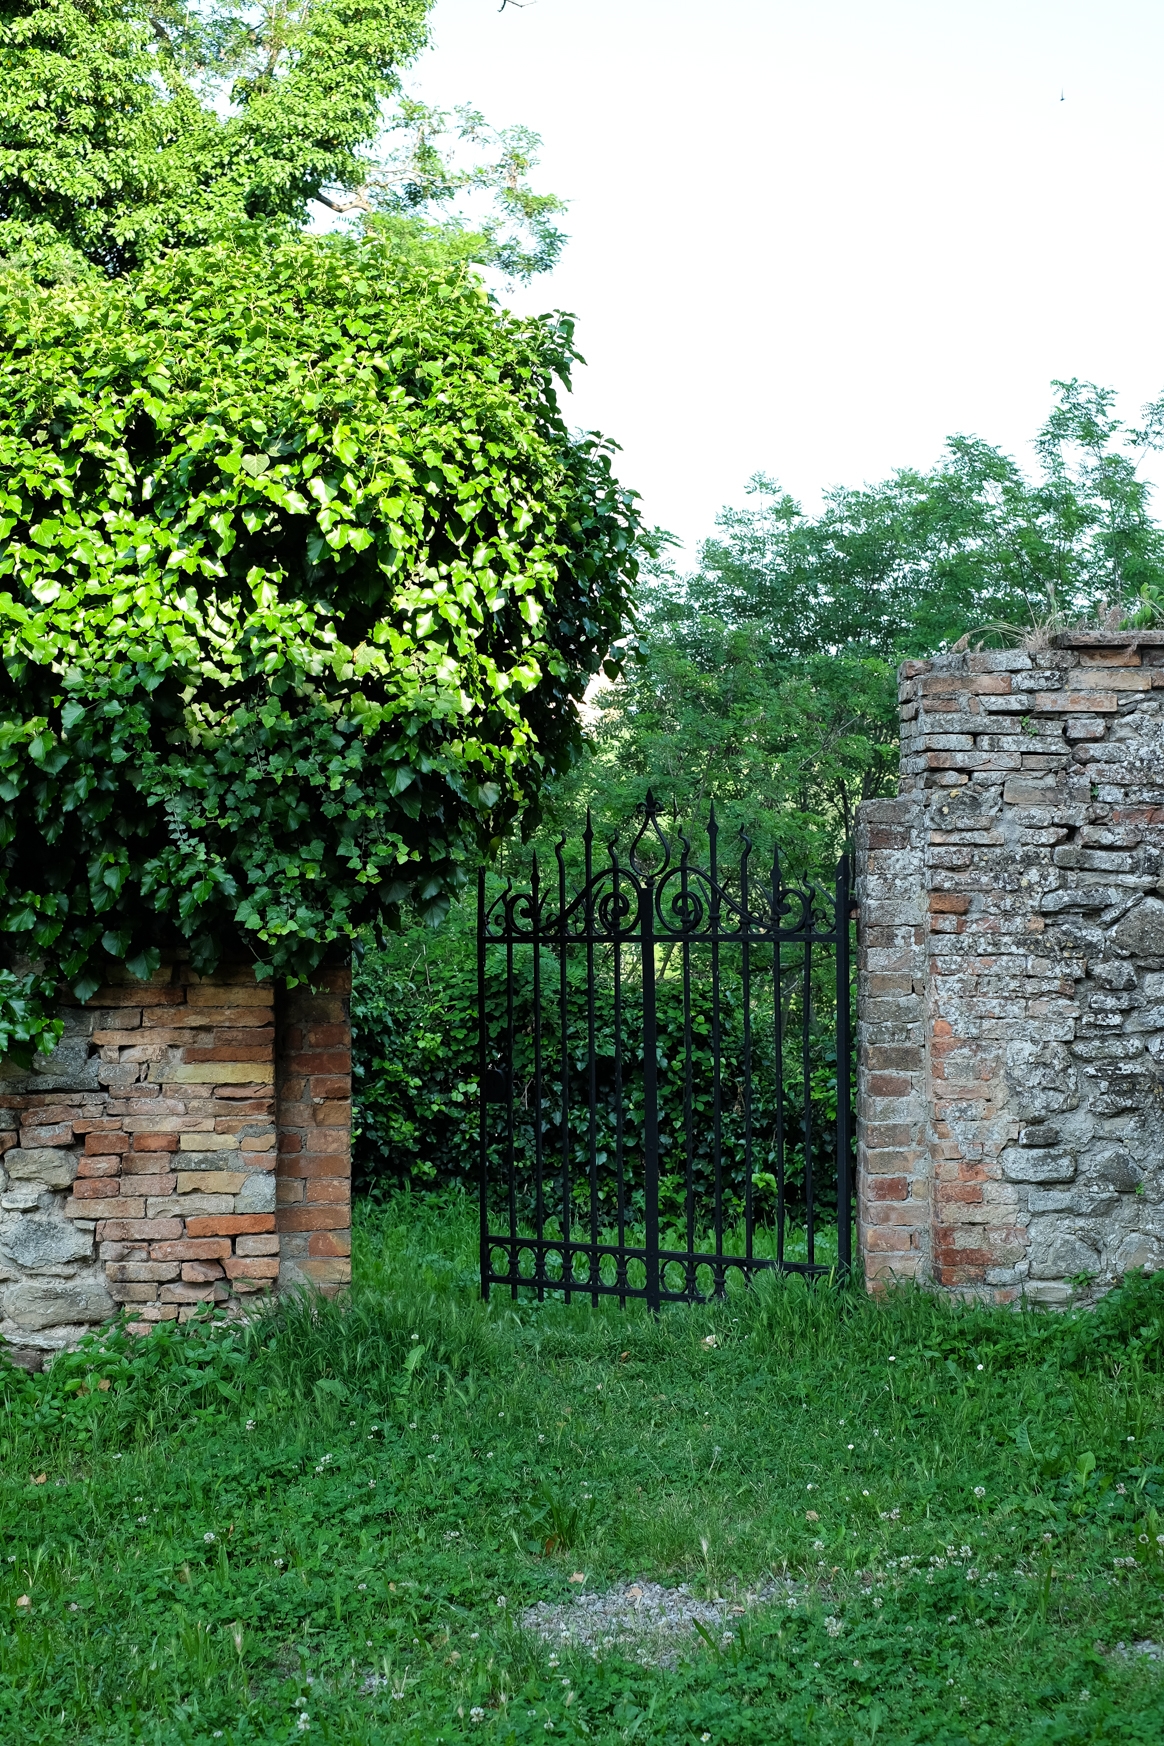 Levizzano Castle